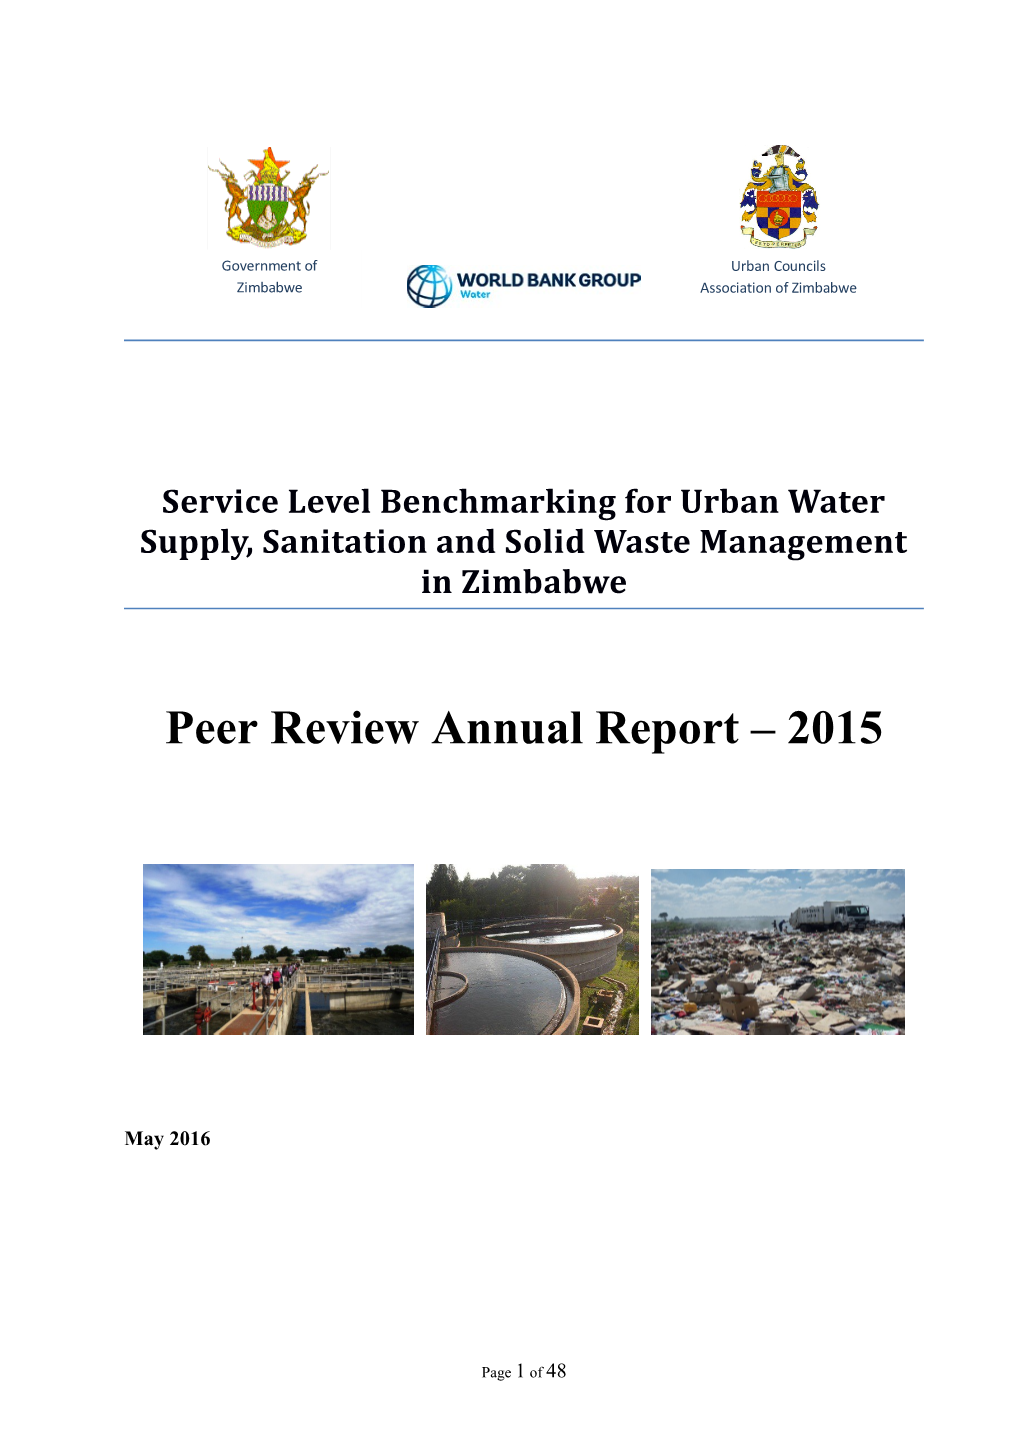 Peer Review Annual Report 2015